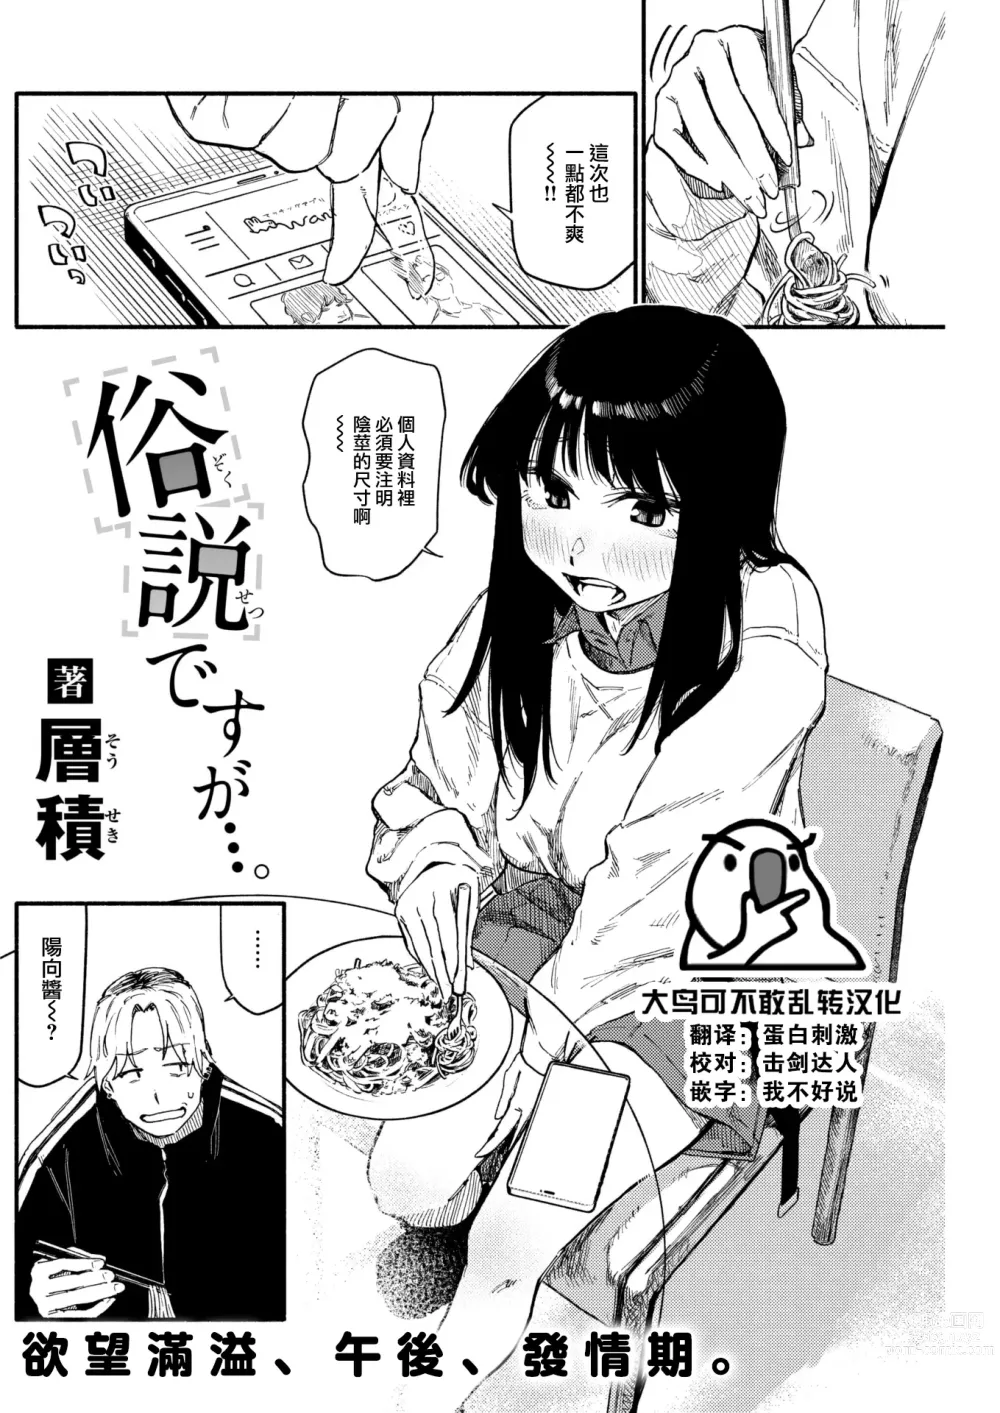 Page 1 of manga Zokusetsu desu ga....